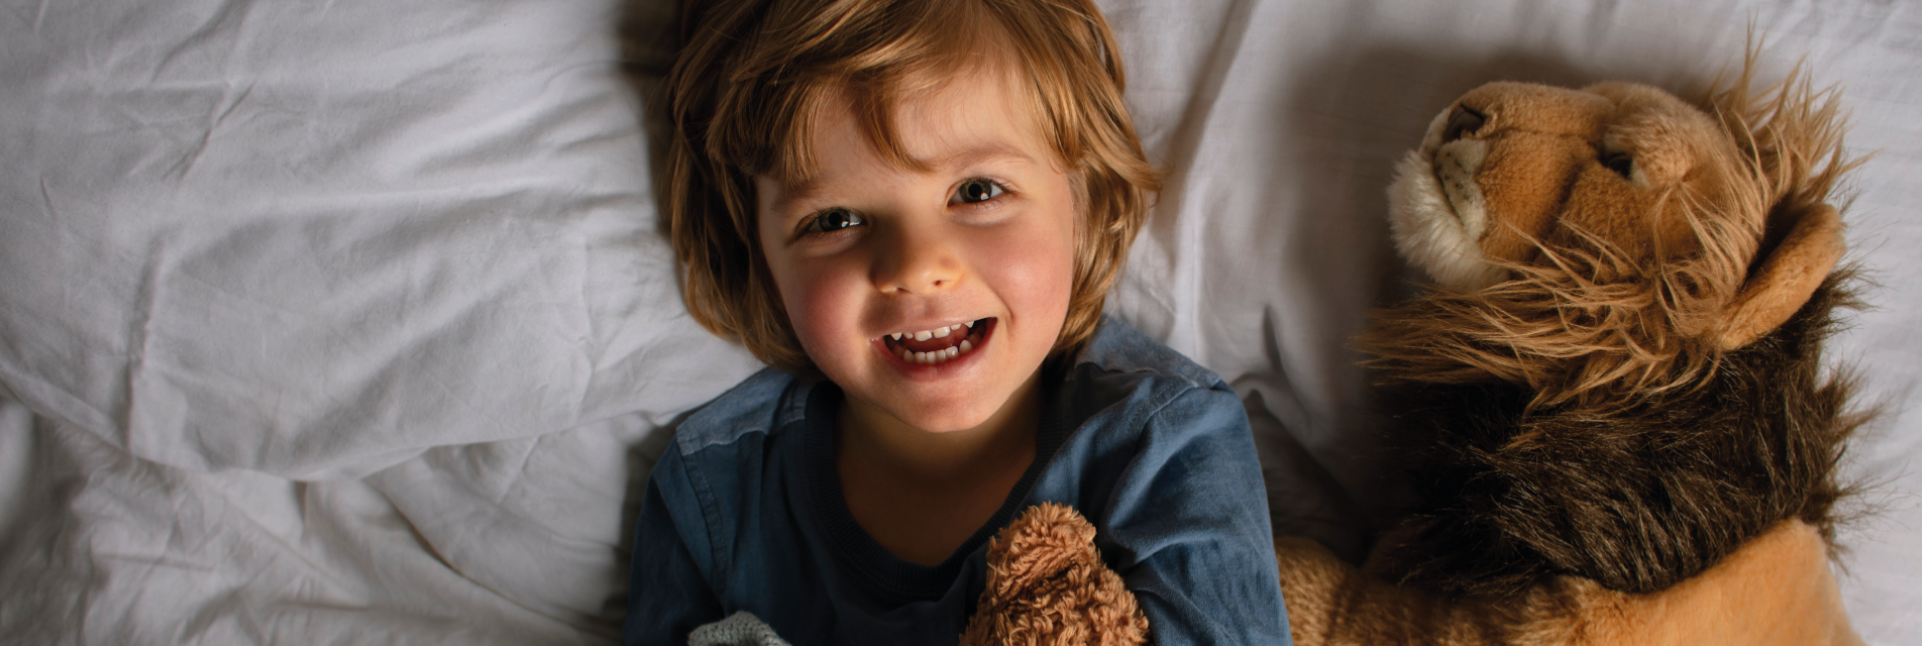 Faringitis en niños: síntomas, causas y tratamiento